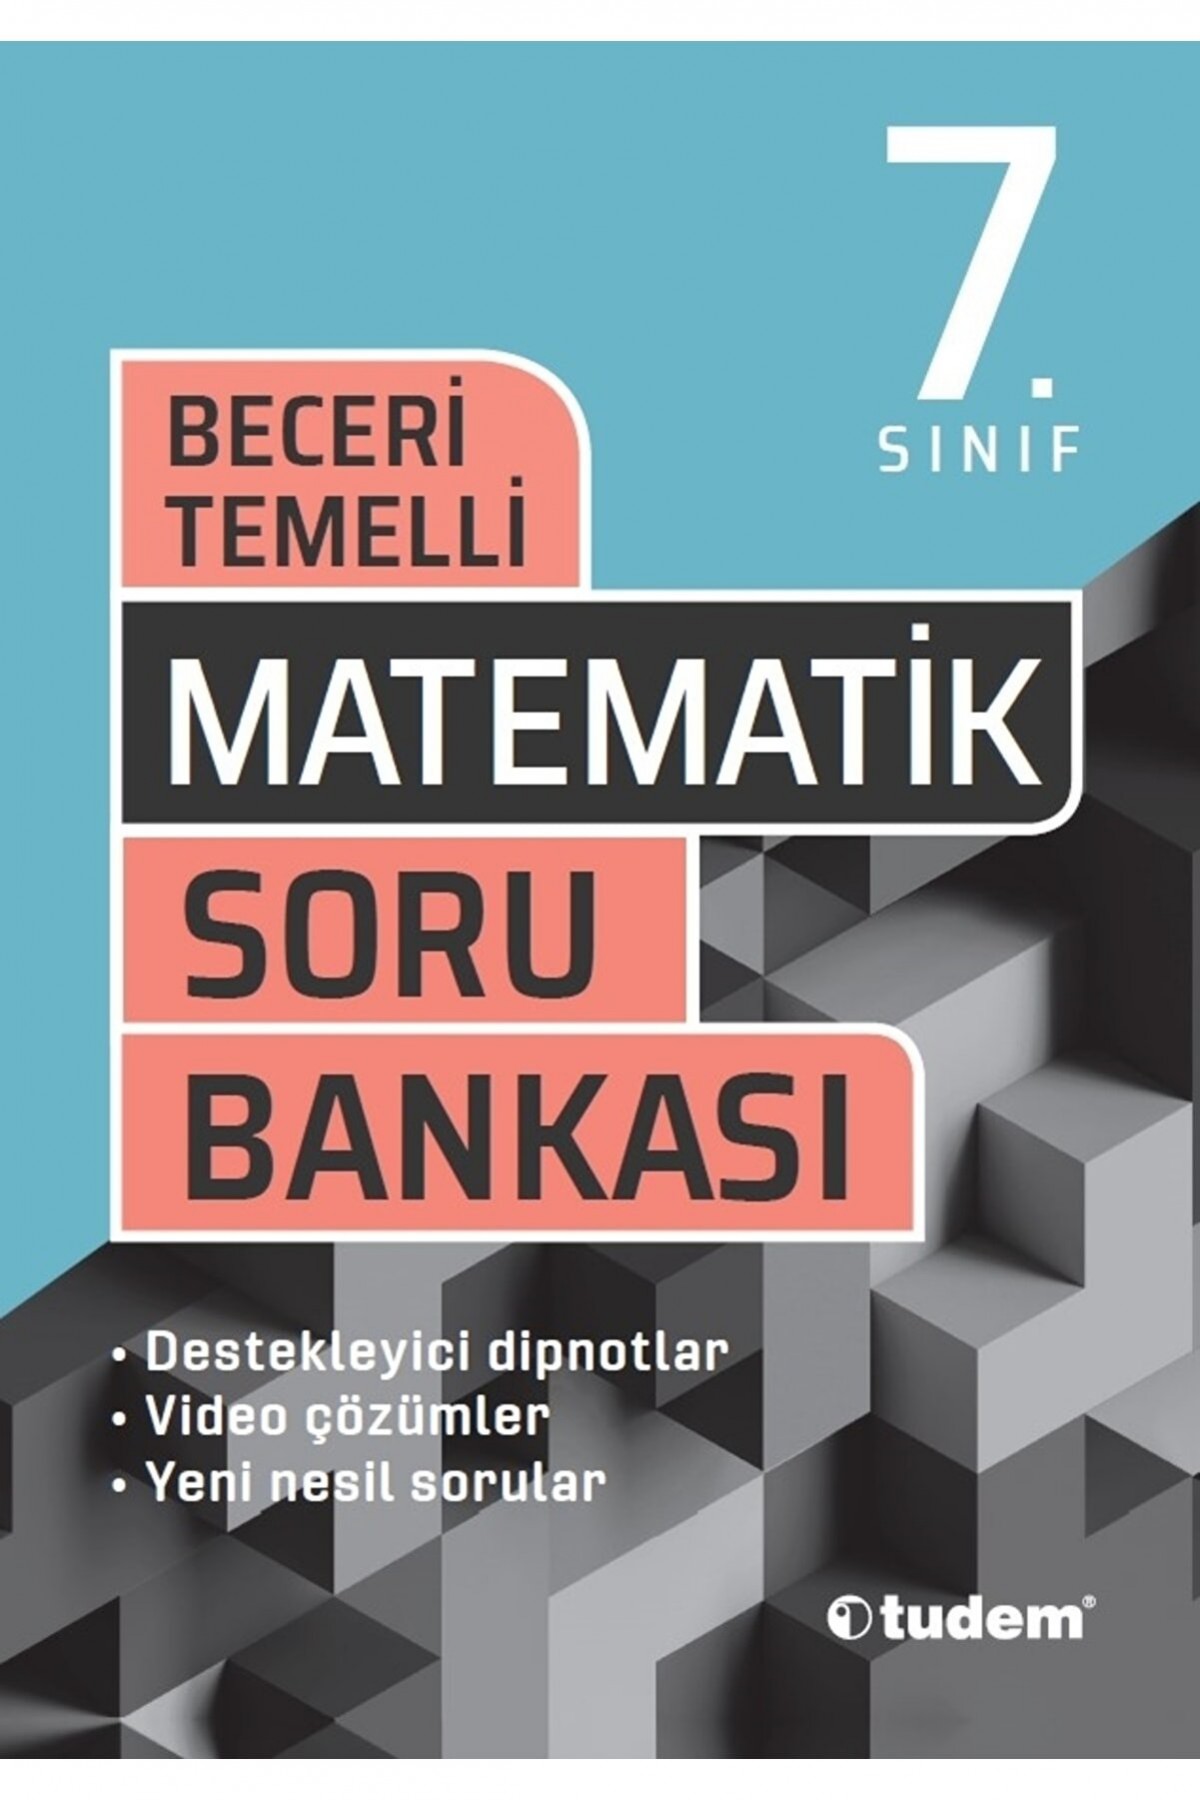 Tudem Yayınları 7. Sınıf Matematik Beceri Temelli Soru Bankası